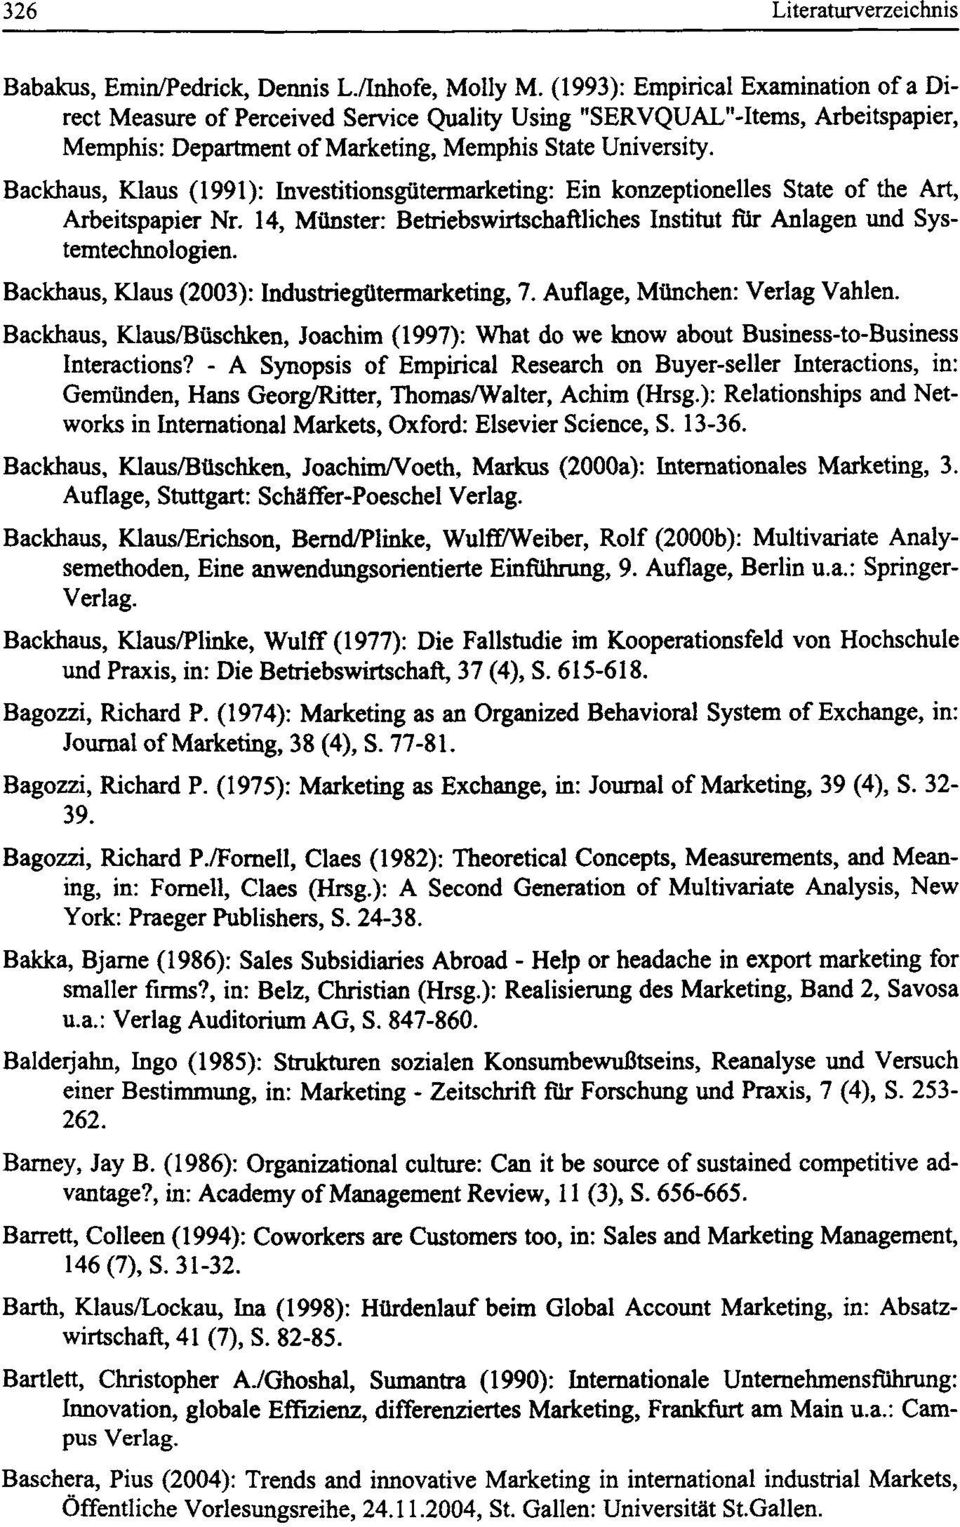 Backhaus, Klaus (1991): Investitionsgutermarketing: Ein konzeptionelles State of the Art, Arbeitspapier Nr. 14, Miinster: Betriebswirtschaftliches Institut fiir Anlagen und Systemtechnologien.